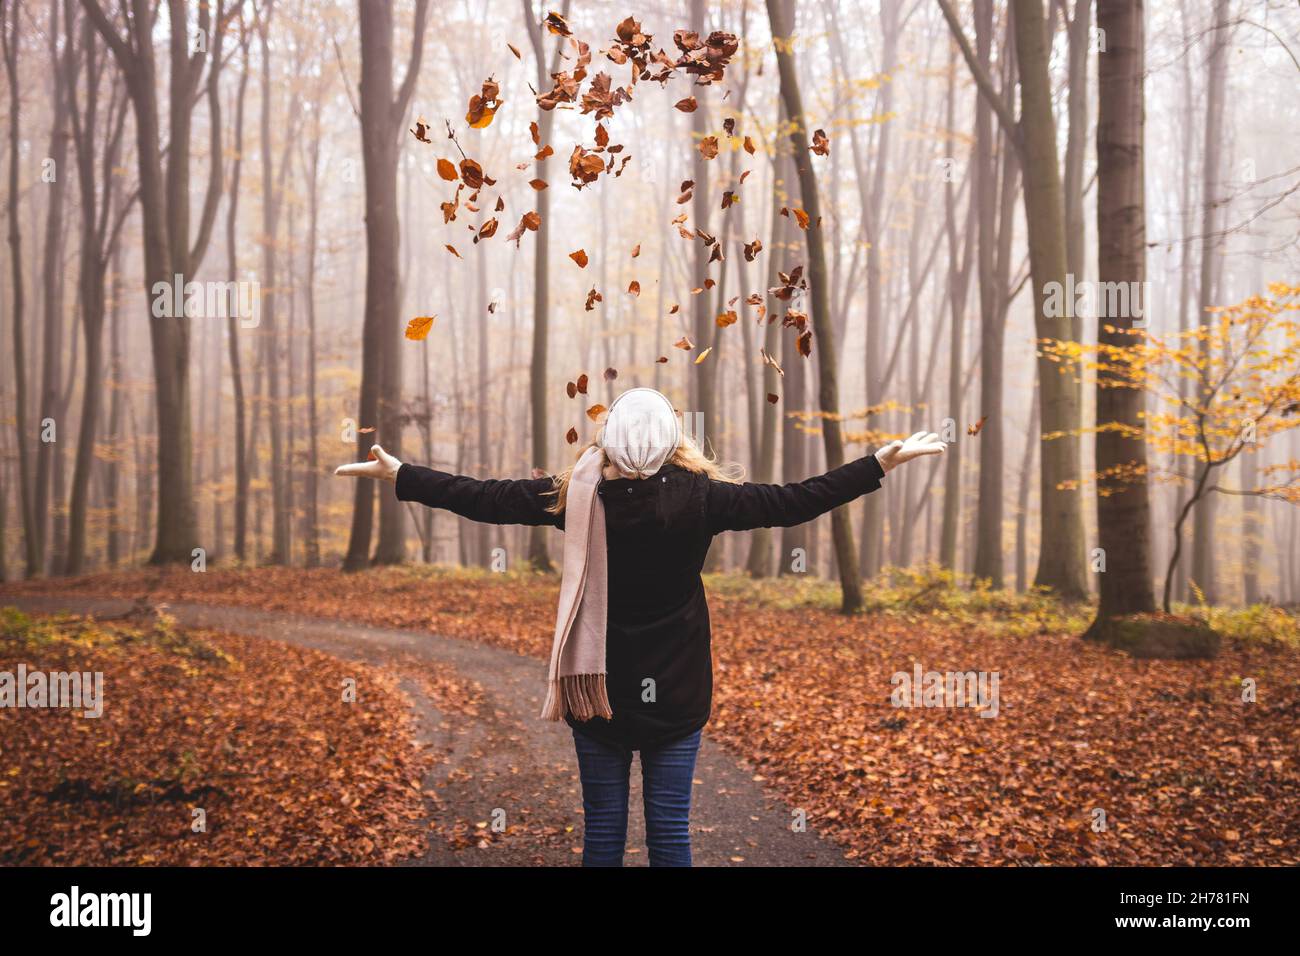 Une femme heureuse jette des feuilles d'automne dans les airs.Profitez de la randonnée dans les bois à l'automne Banque D'Images